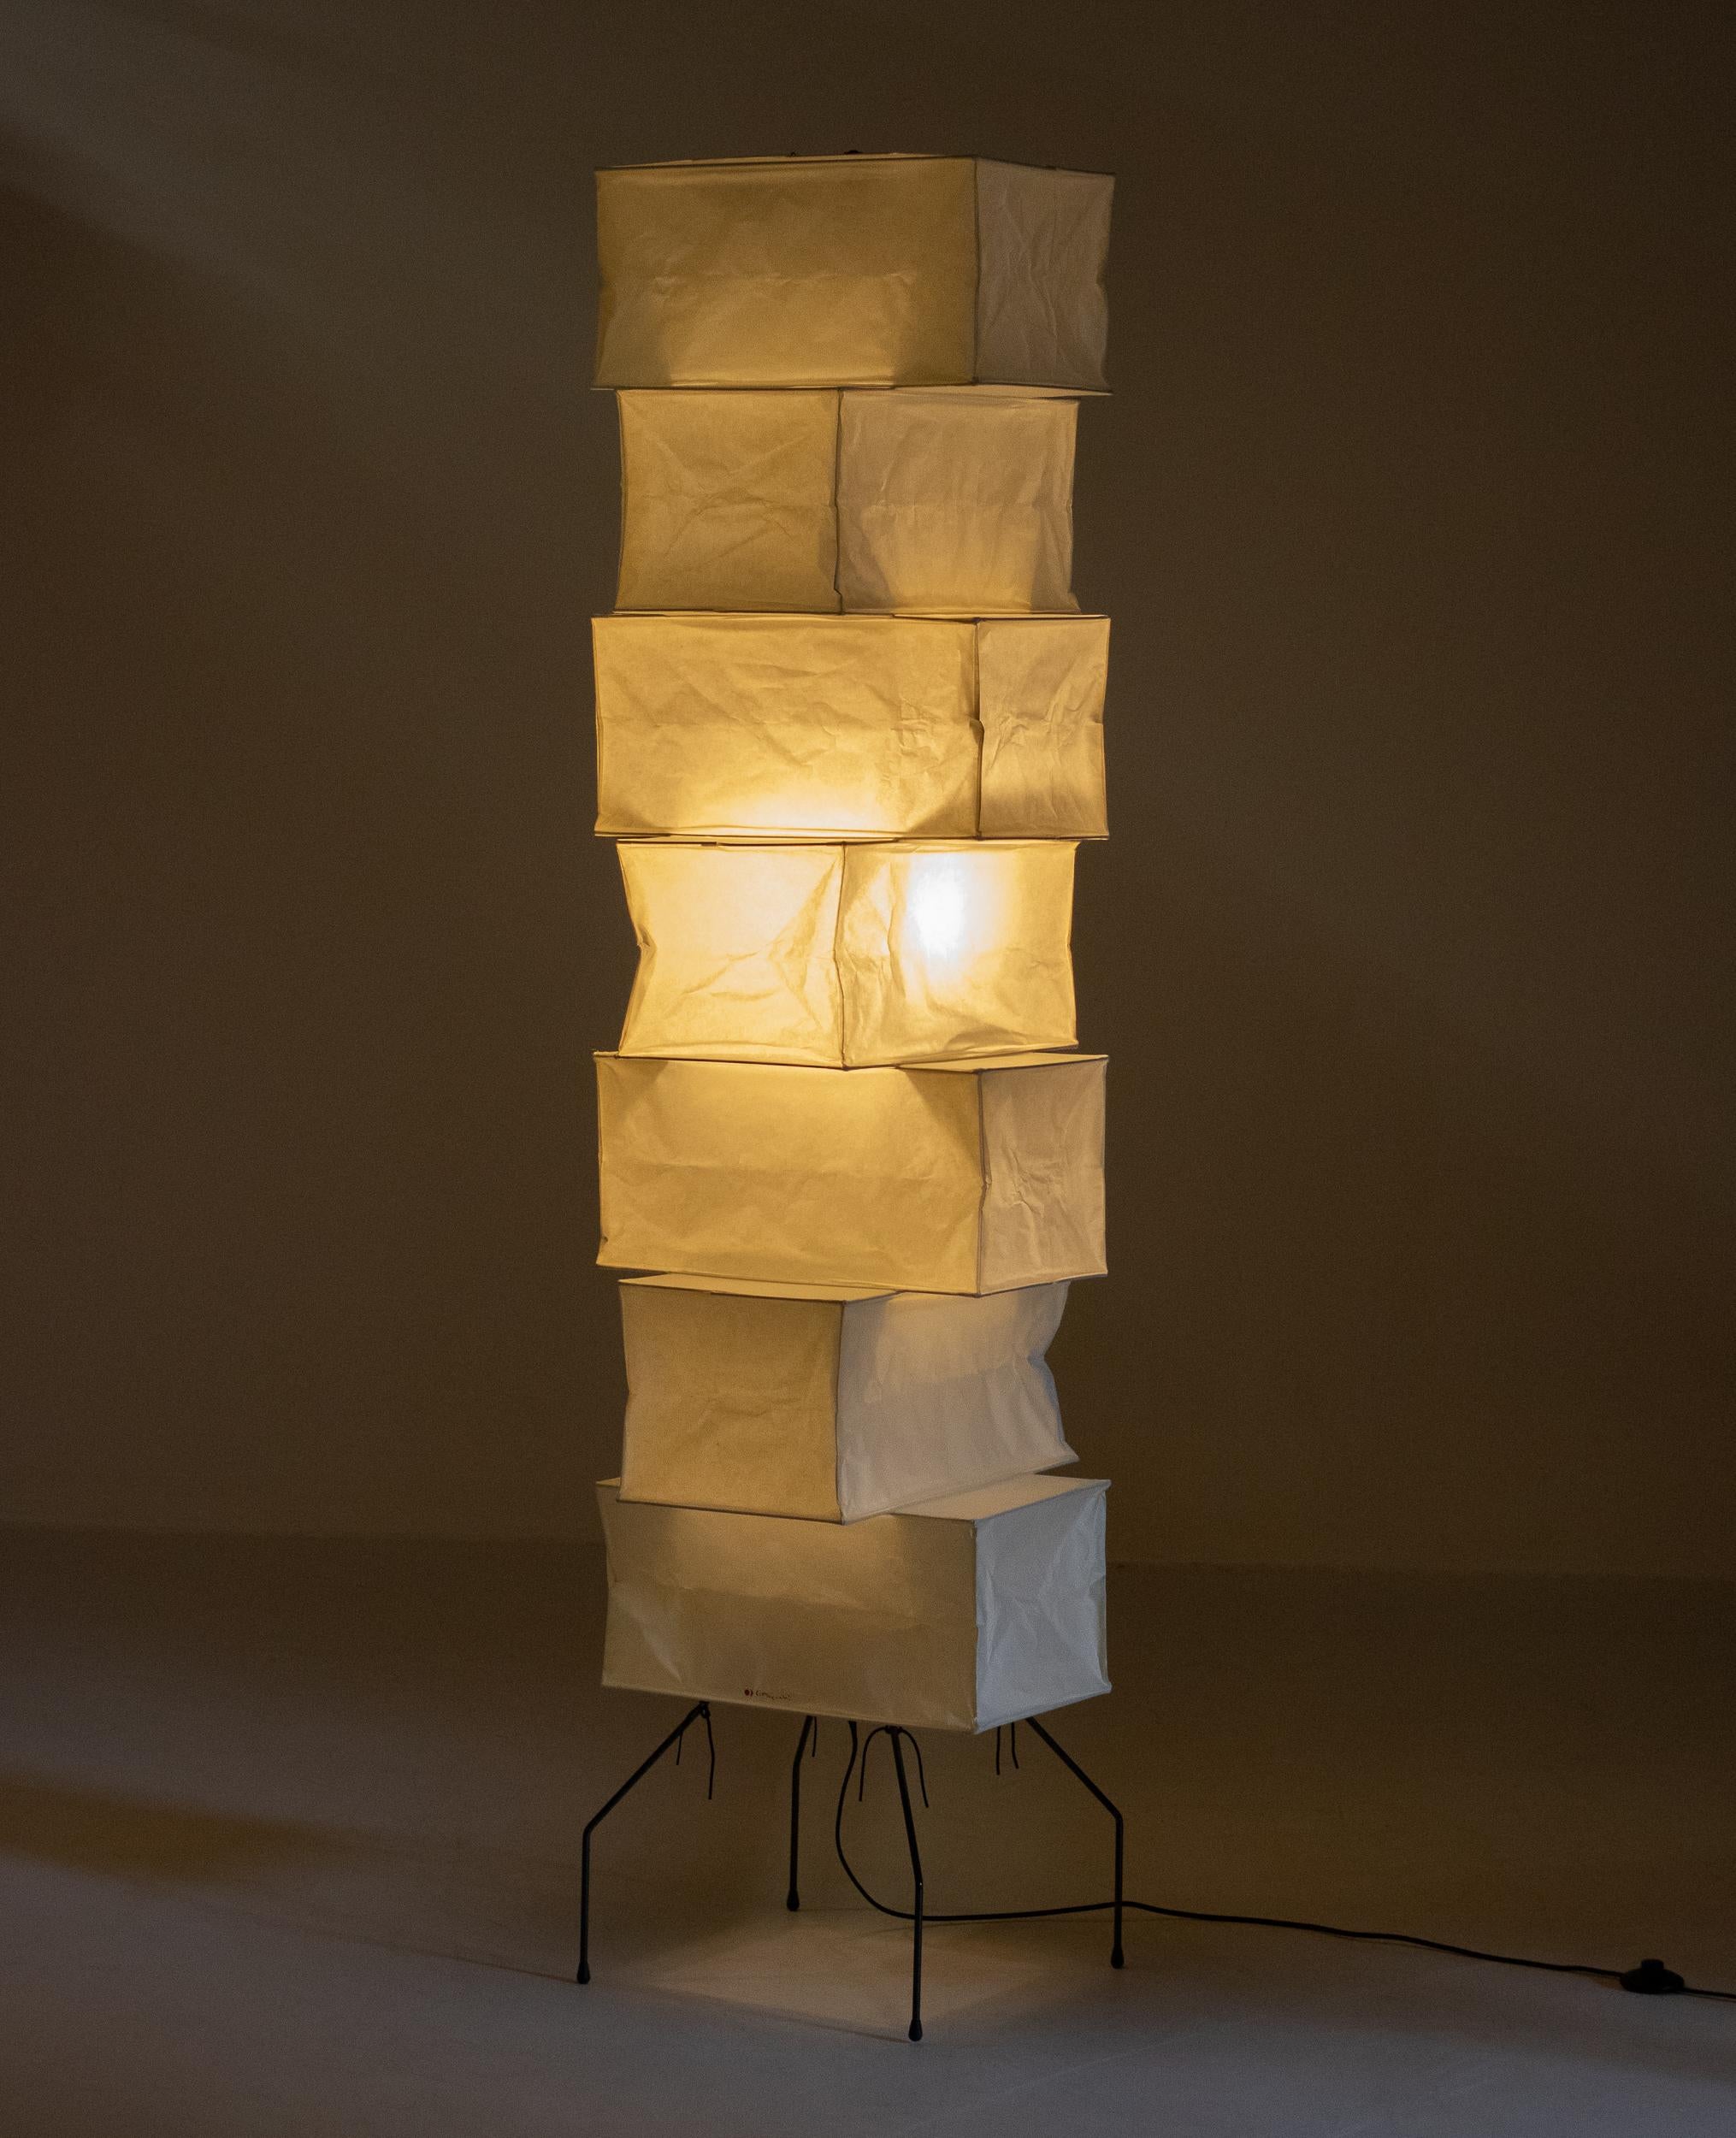 Lampadaire Akari UF4-L10 conçu par Isamu Noguchi, 1951. Fabriqué par Ozeki & Co. au Japon. 
Structure en bambou recouverte de papier washi soutenue par une base en métal revêtu. Production récente, câblée aux normes américaines. Ce luminaire est